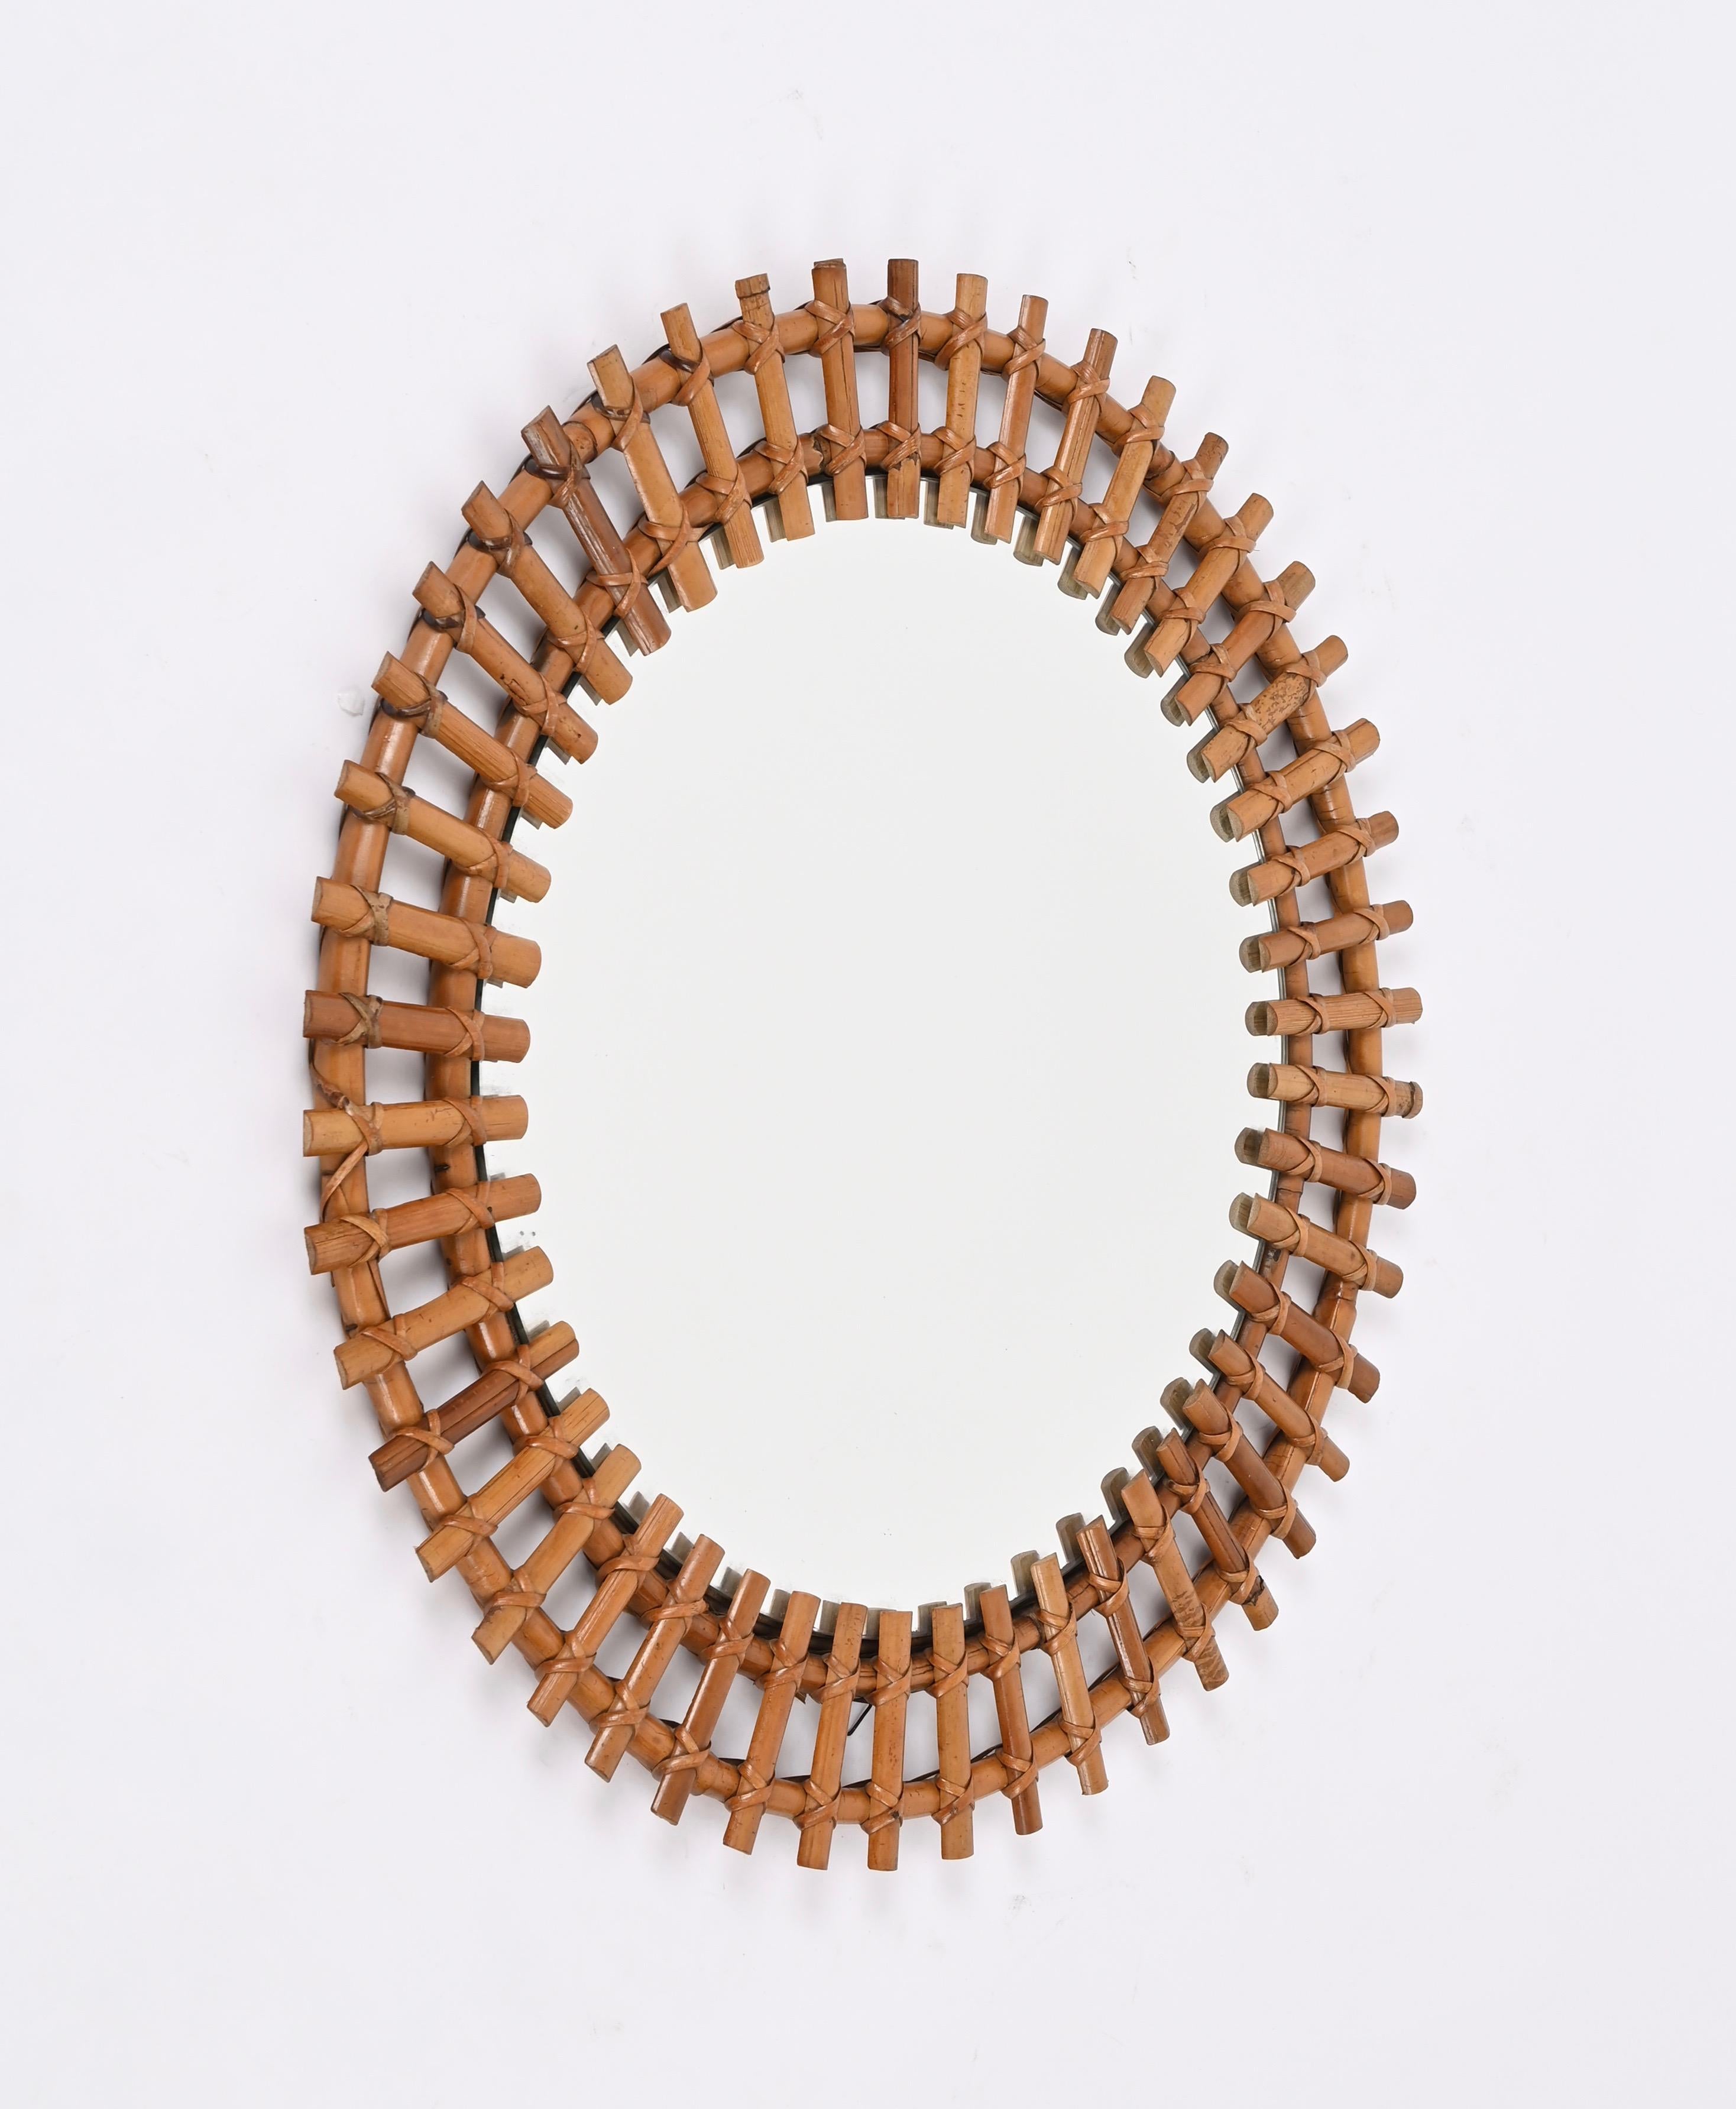 Spektakulärer runder Spiegel im französischen Riviera-Stil der Jahrhundertmitte aus Rattan, Weide und Bambus. Dieses prächtige Stück wurde von Franco Albini entworfen und in den 1970er Jahren in Italien hergestellt.

Dieser atemberaubende,